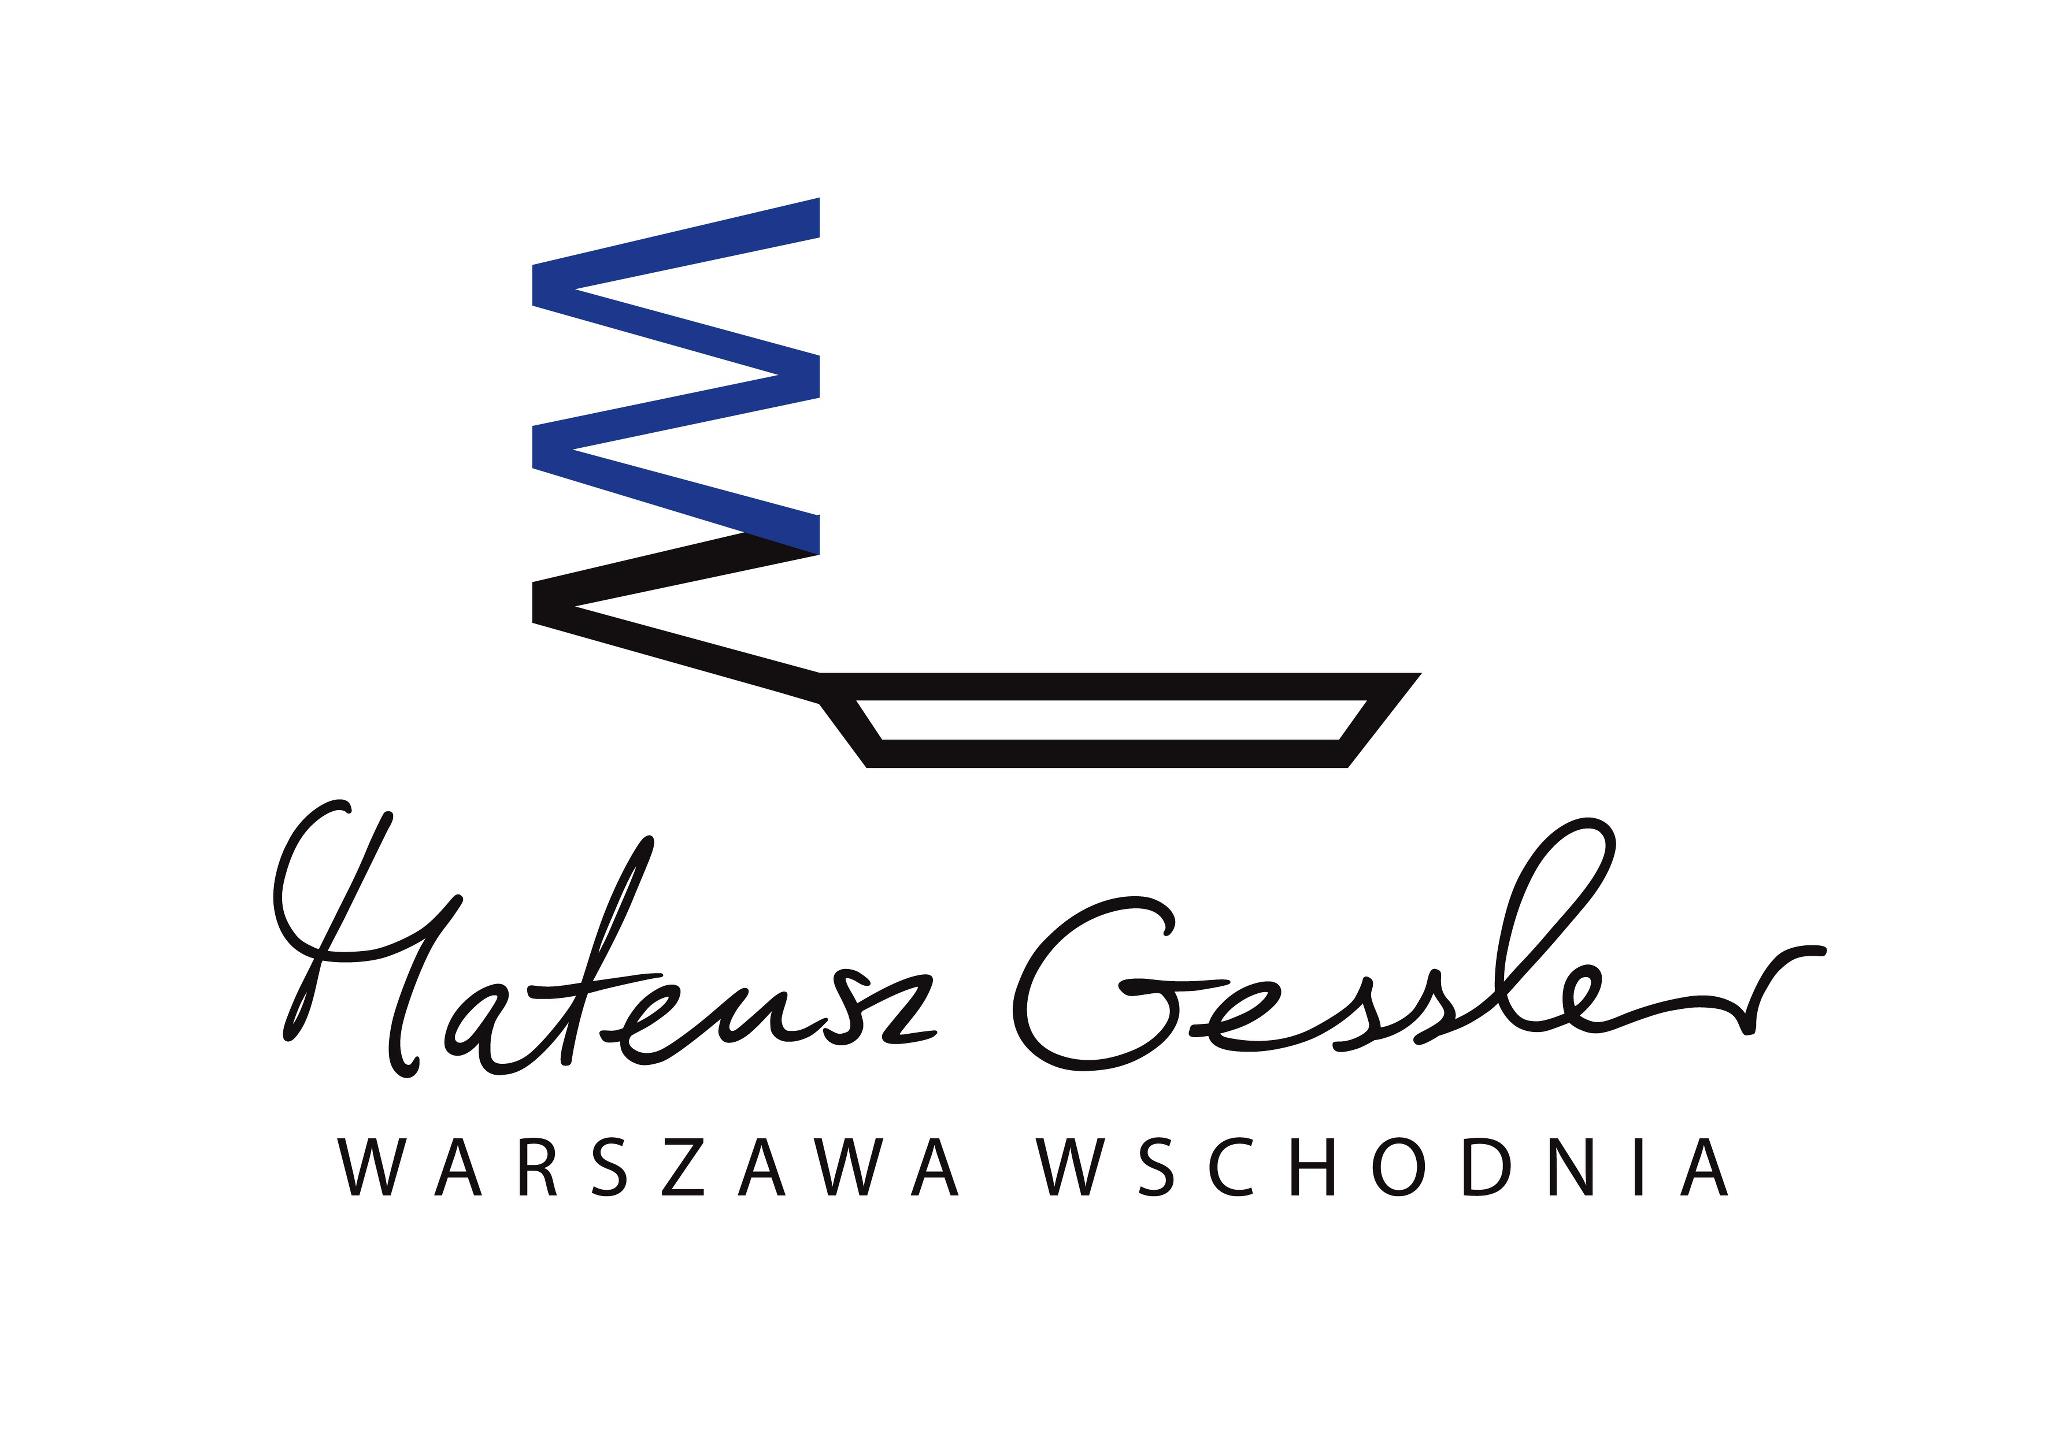 Warszawa Wschodnia by Mateusz Gessler